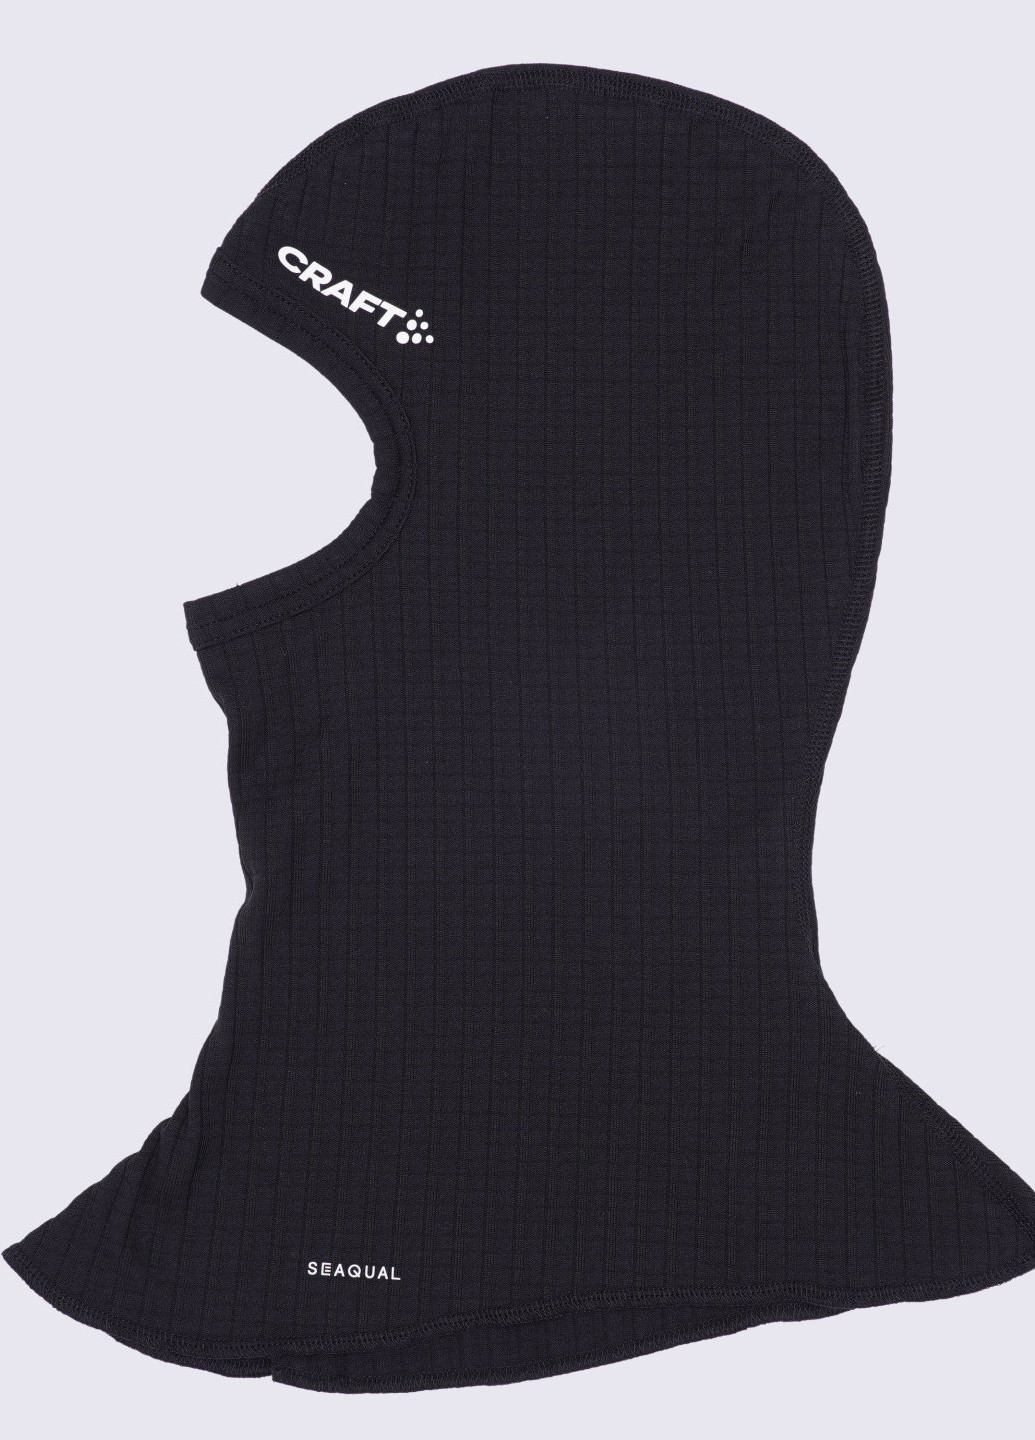 Craft балаклава однодырочная логотип черный спортивный трикотаж, полиэстер производство - Латвия